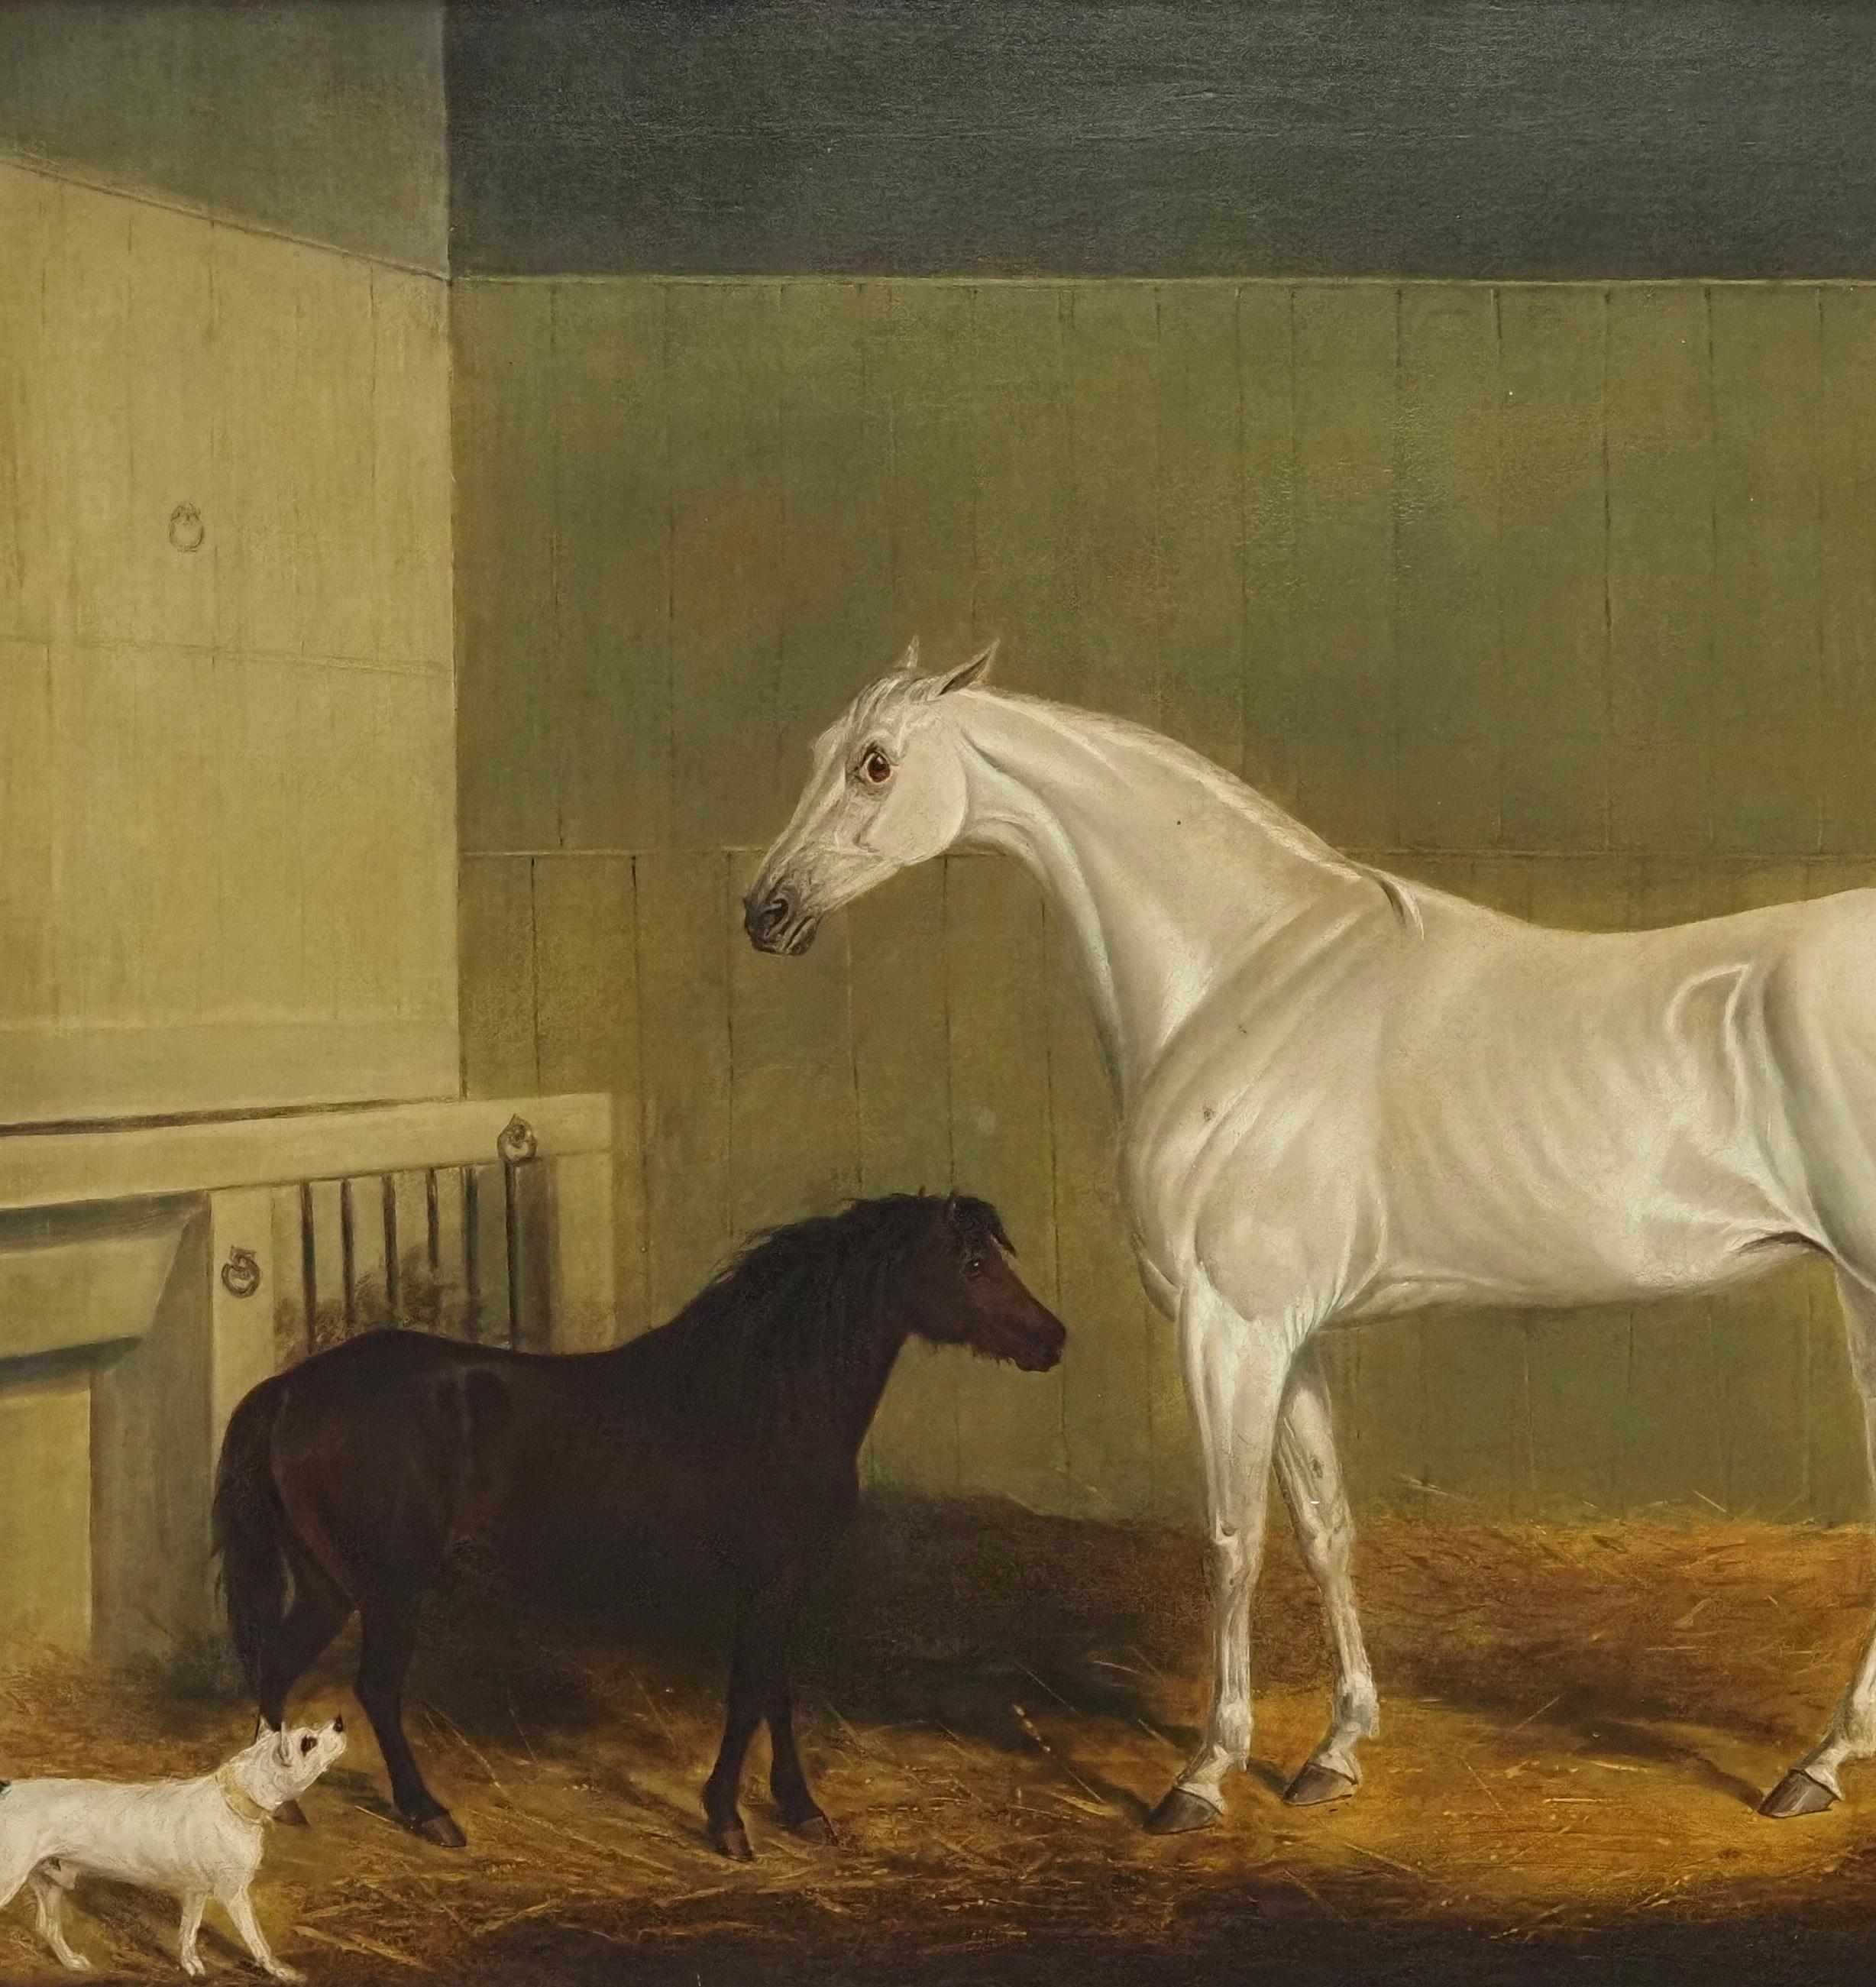 James Loder aus Bath (1784-1854)
Ein graues Pferd, Pony und Terrier in einem Stall
signiert 'J Loder' (unten rechts)
Öl auf Leinwand
Leinwandgröße - 24 x 30 Zoll
Gerahmte Größe - 27 x 34 Zoll

Provenienz
Mit Arthur Ackermann, London.

James Loder of